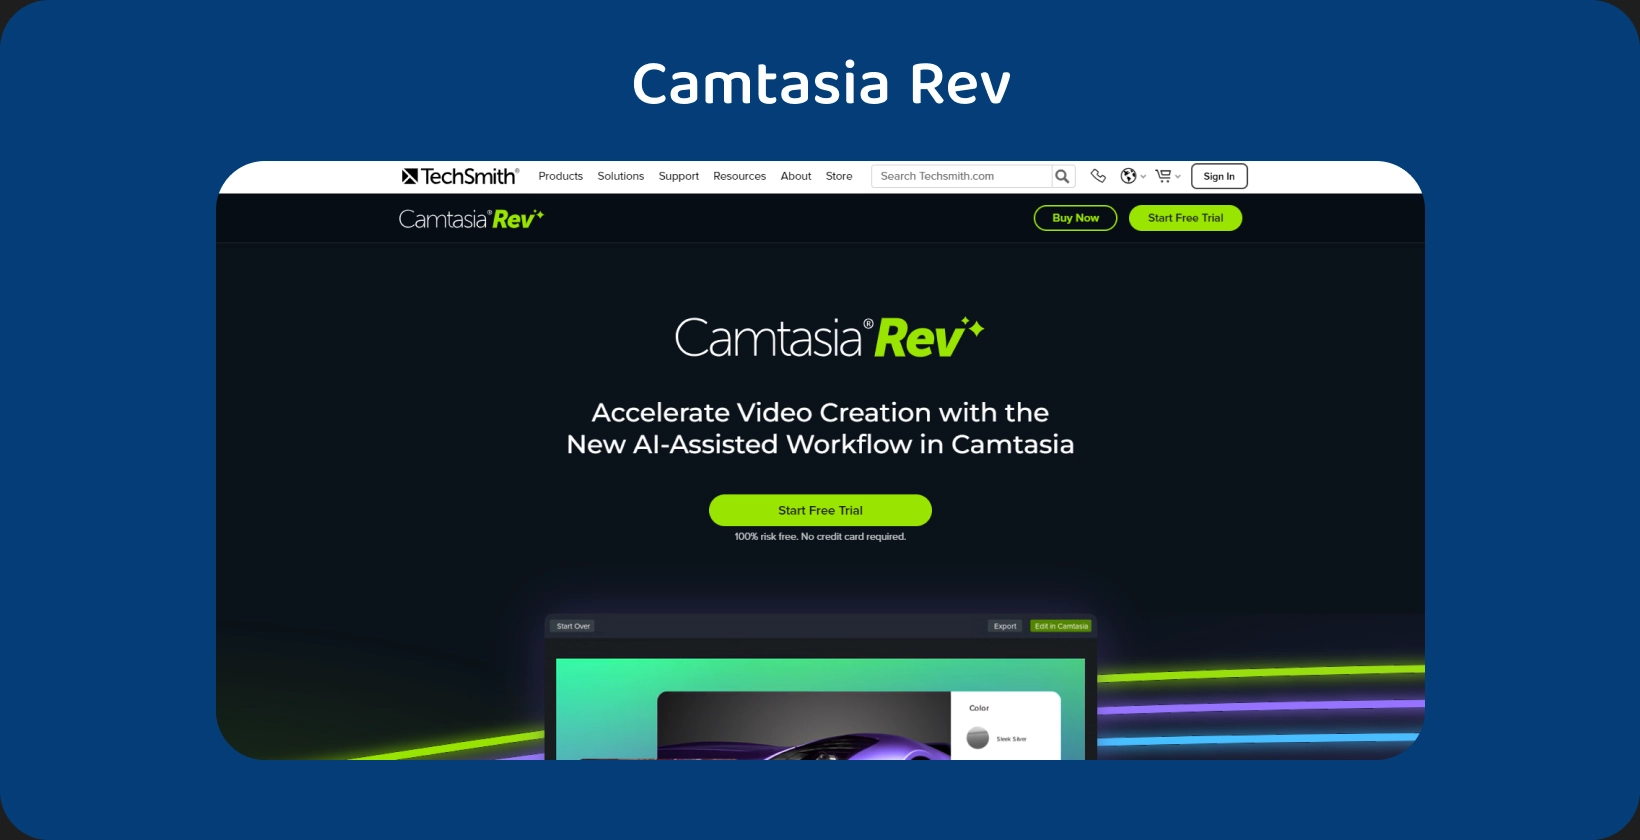 Interfaz de la línea de tiempo de edición de video de Camtasia, destacando las funciones de transcripción y edición.